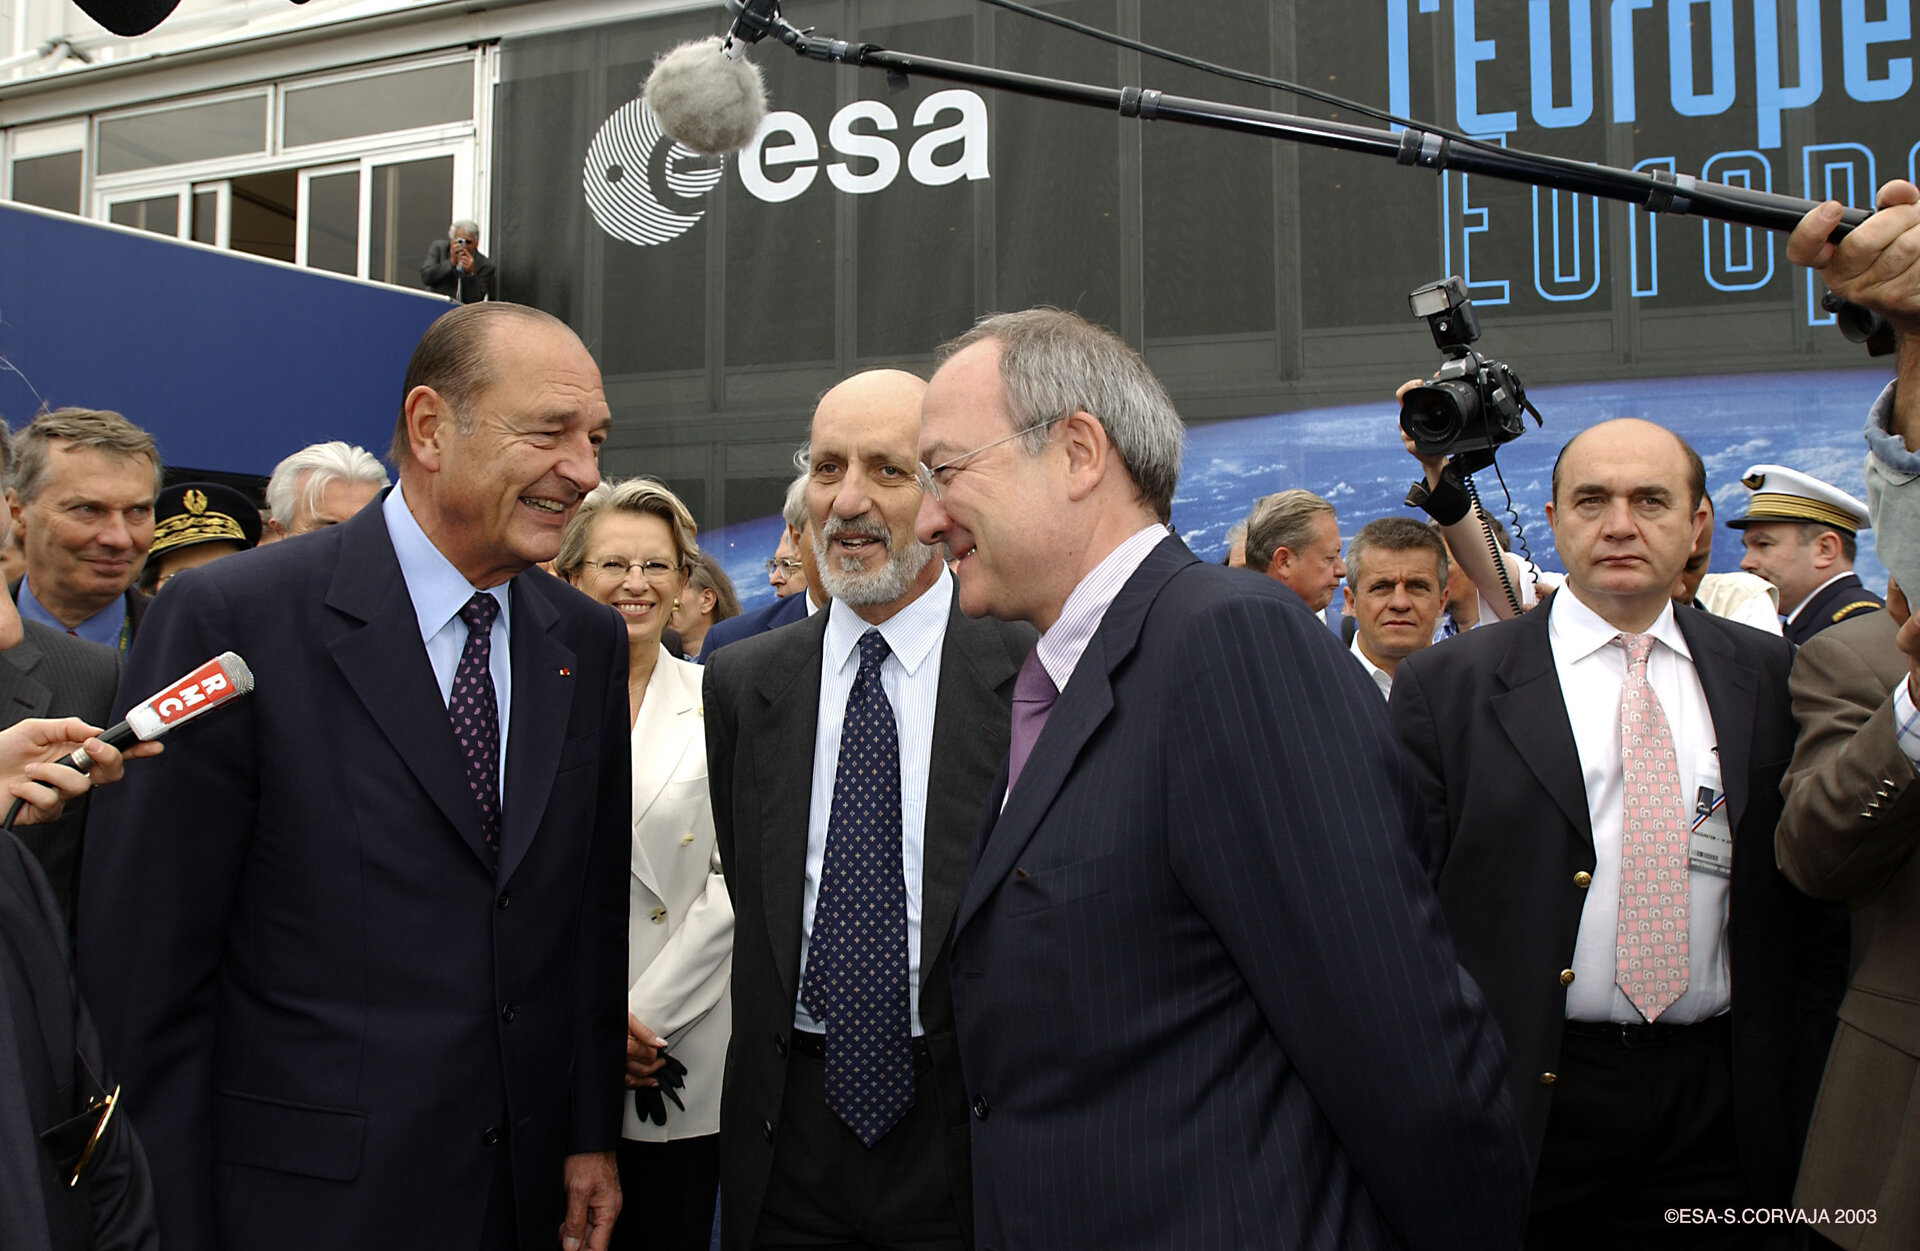 Il Presidente Francese Chirac visita lo stand dell`ESA a Le Bourget 2003